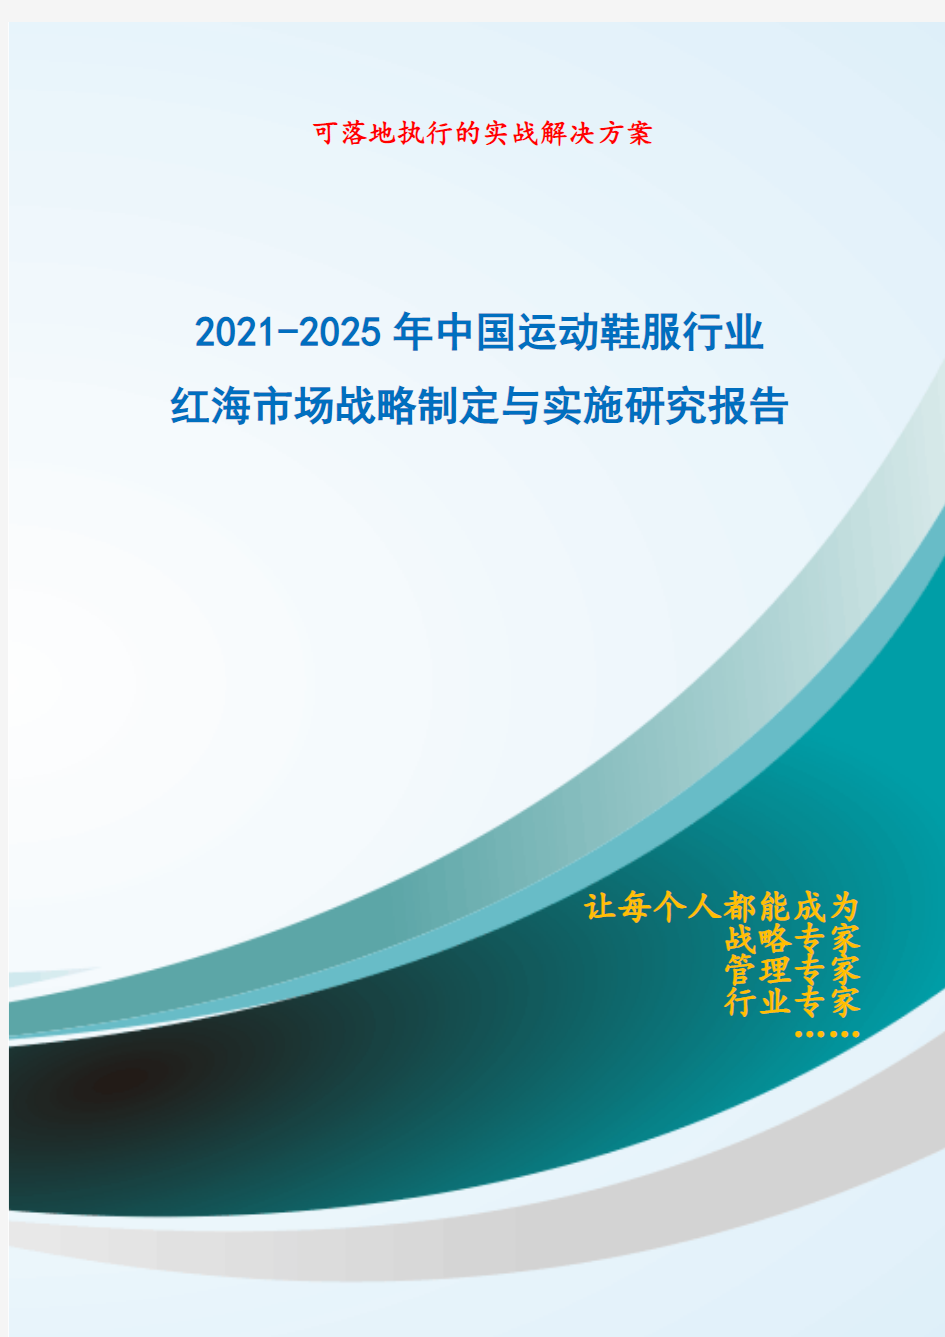 2021-2025年中国运动鞋服行业红海市场战略制定与实施研究报告